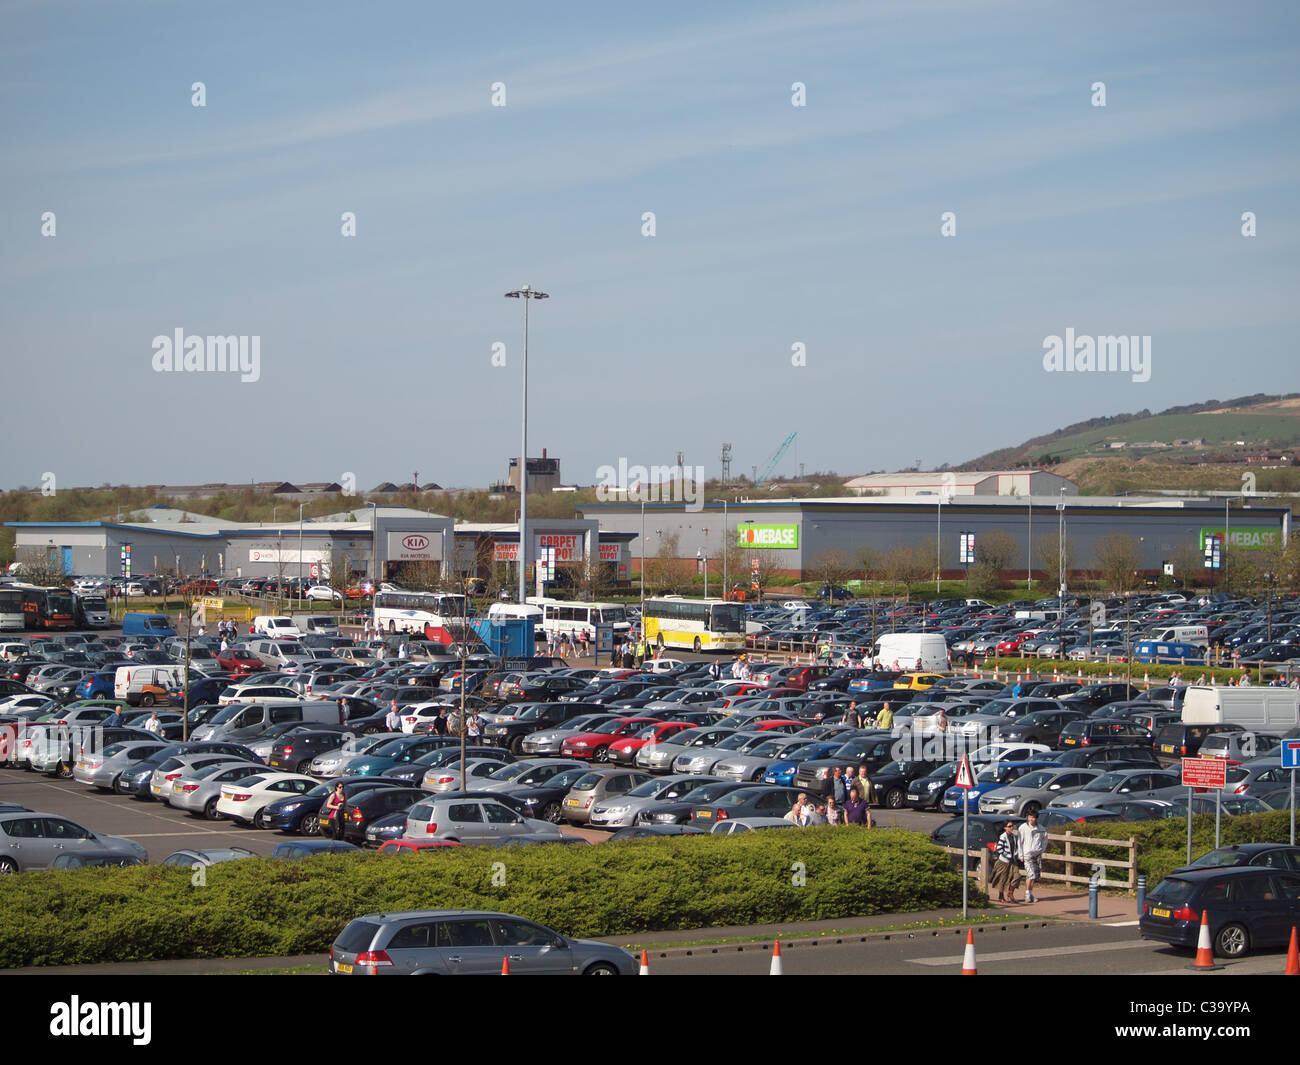 Le parking principal à côté du stade Macron, le terrain du Bolton Wanderers  et Middlebrook retail park Photo Stock - Alamy